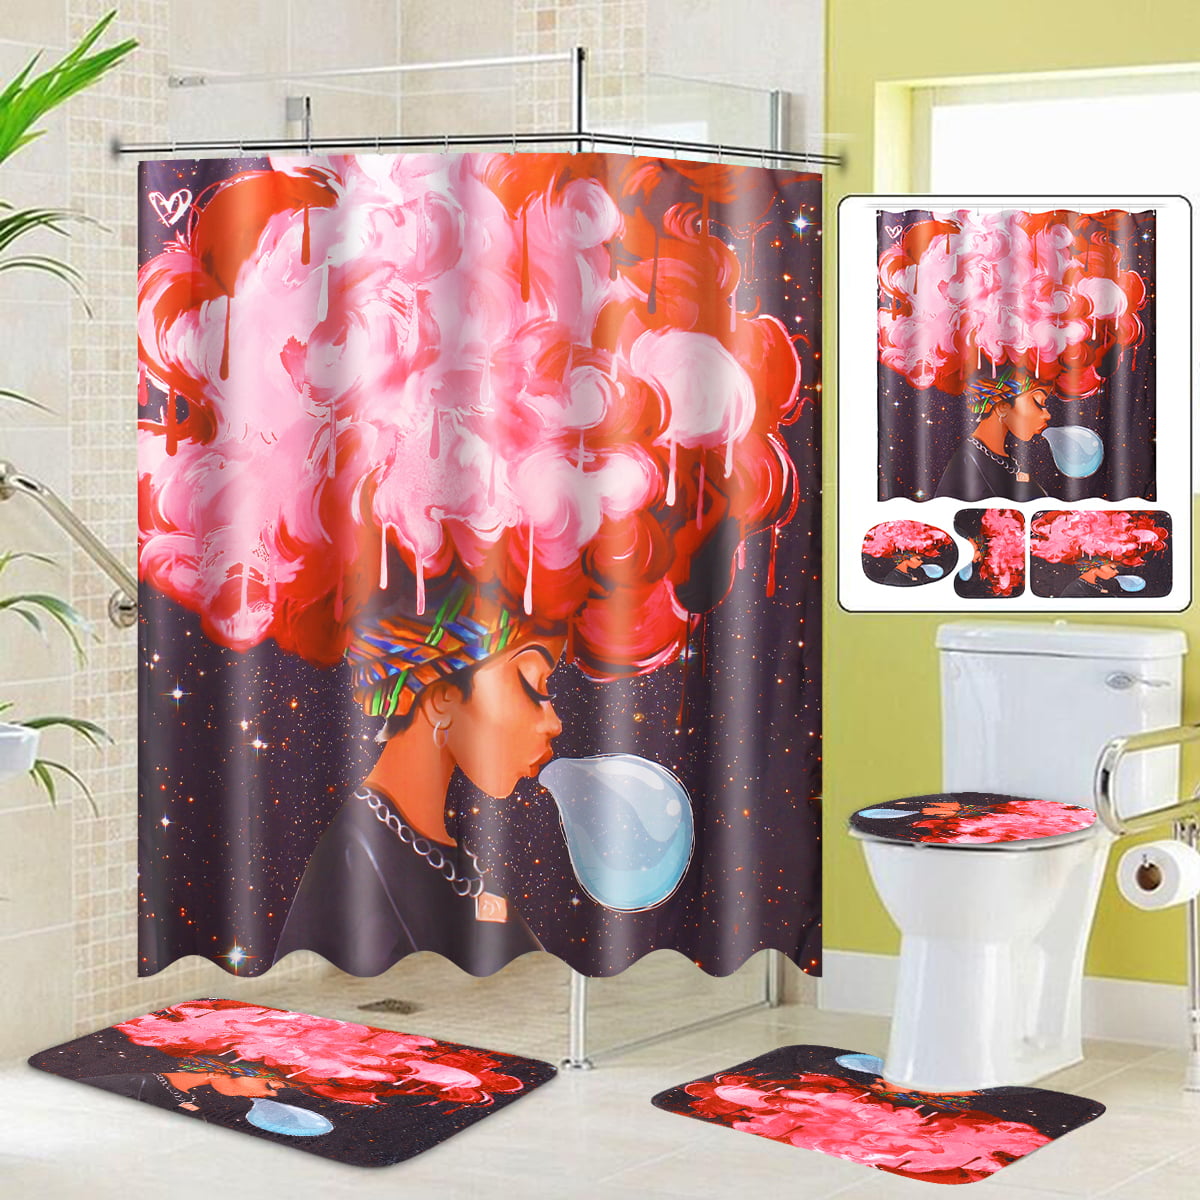 Bathroom Shower Curtain+Non-slip Bath Mat Pedestal Toilet Seat Cover Lid Rug 